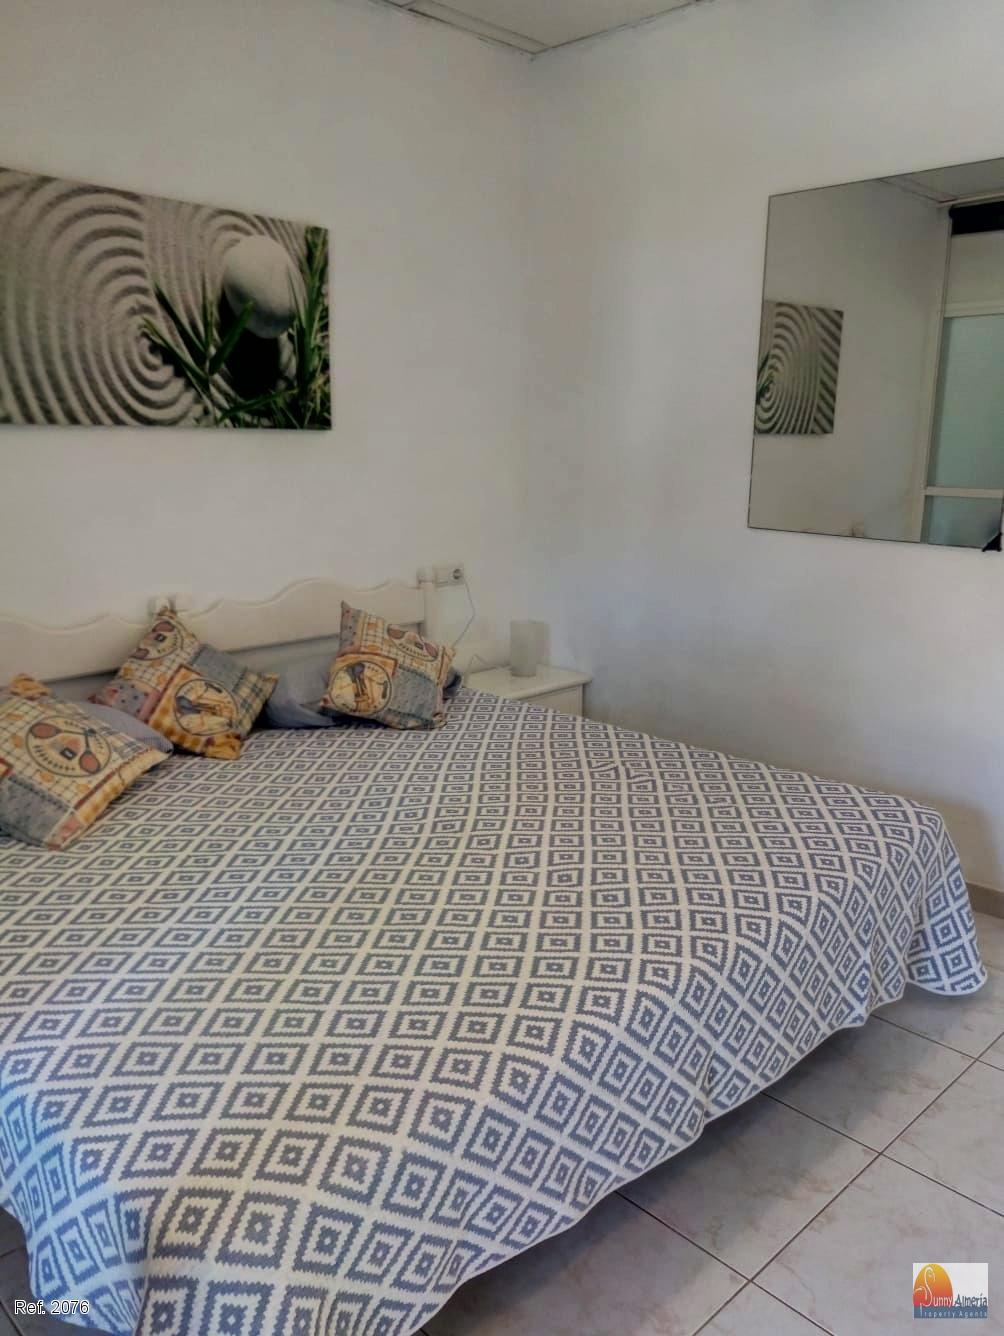 Bungalow for rent in Avenida las Gaviotas   19 (Roquetas de Mar), 850 €/month